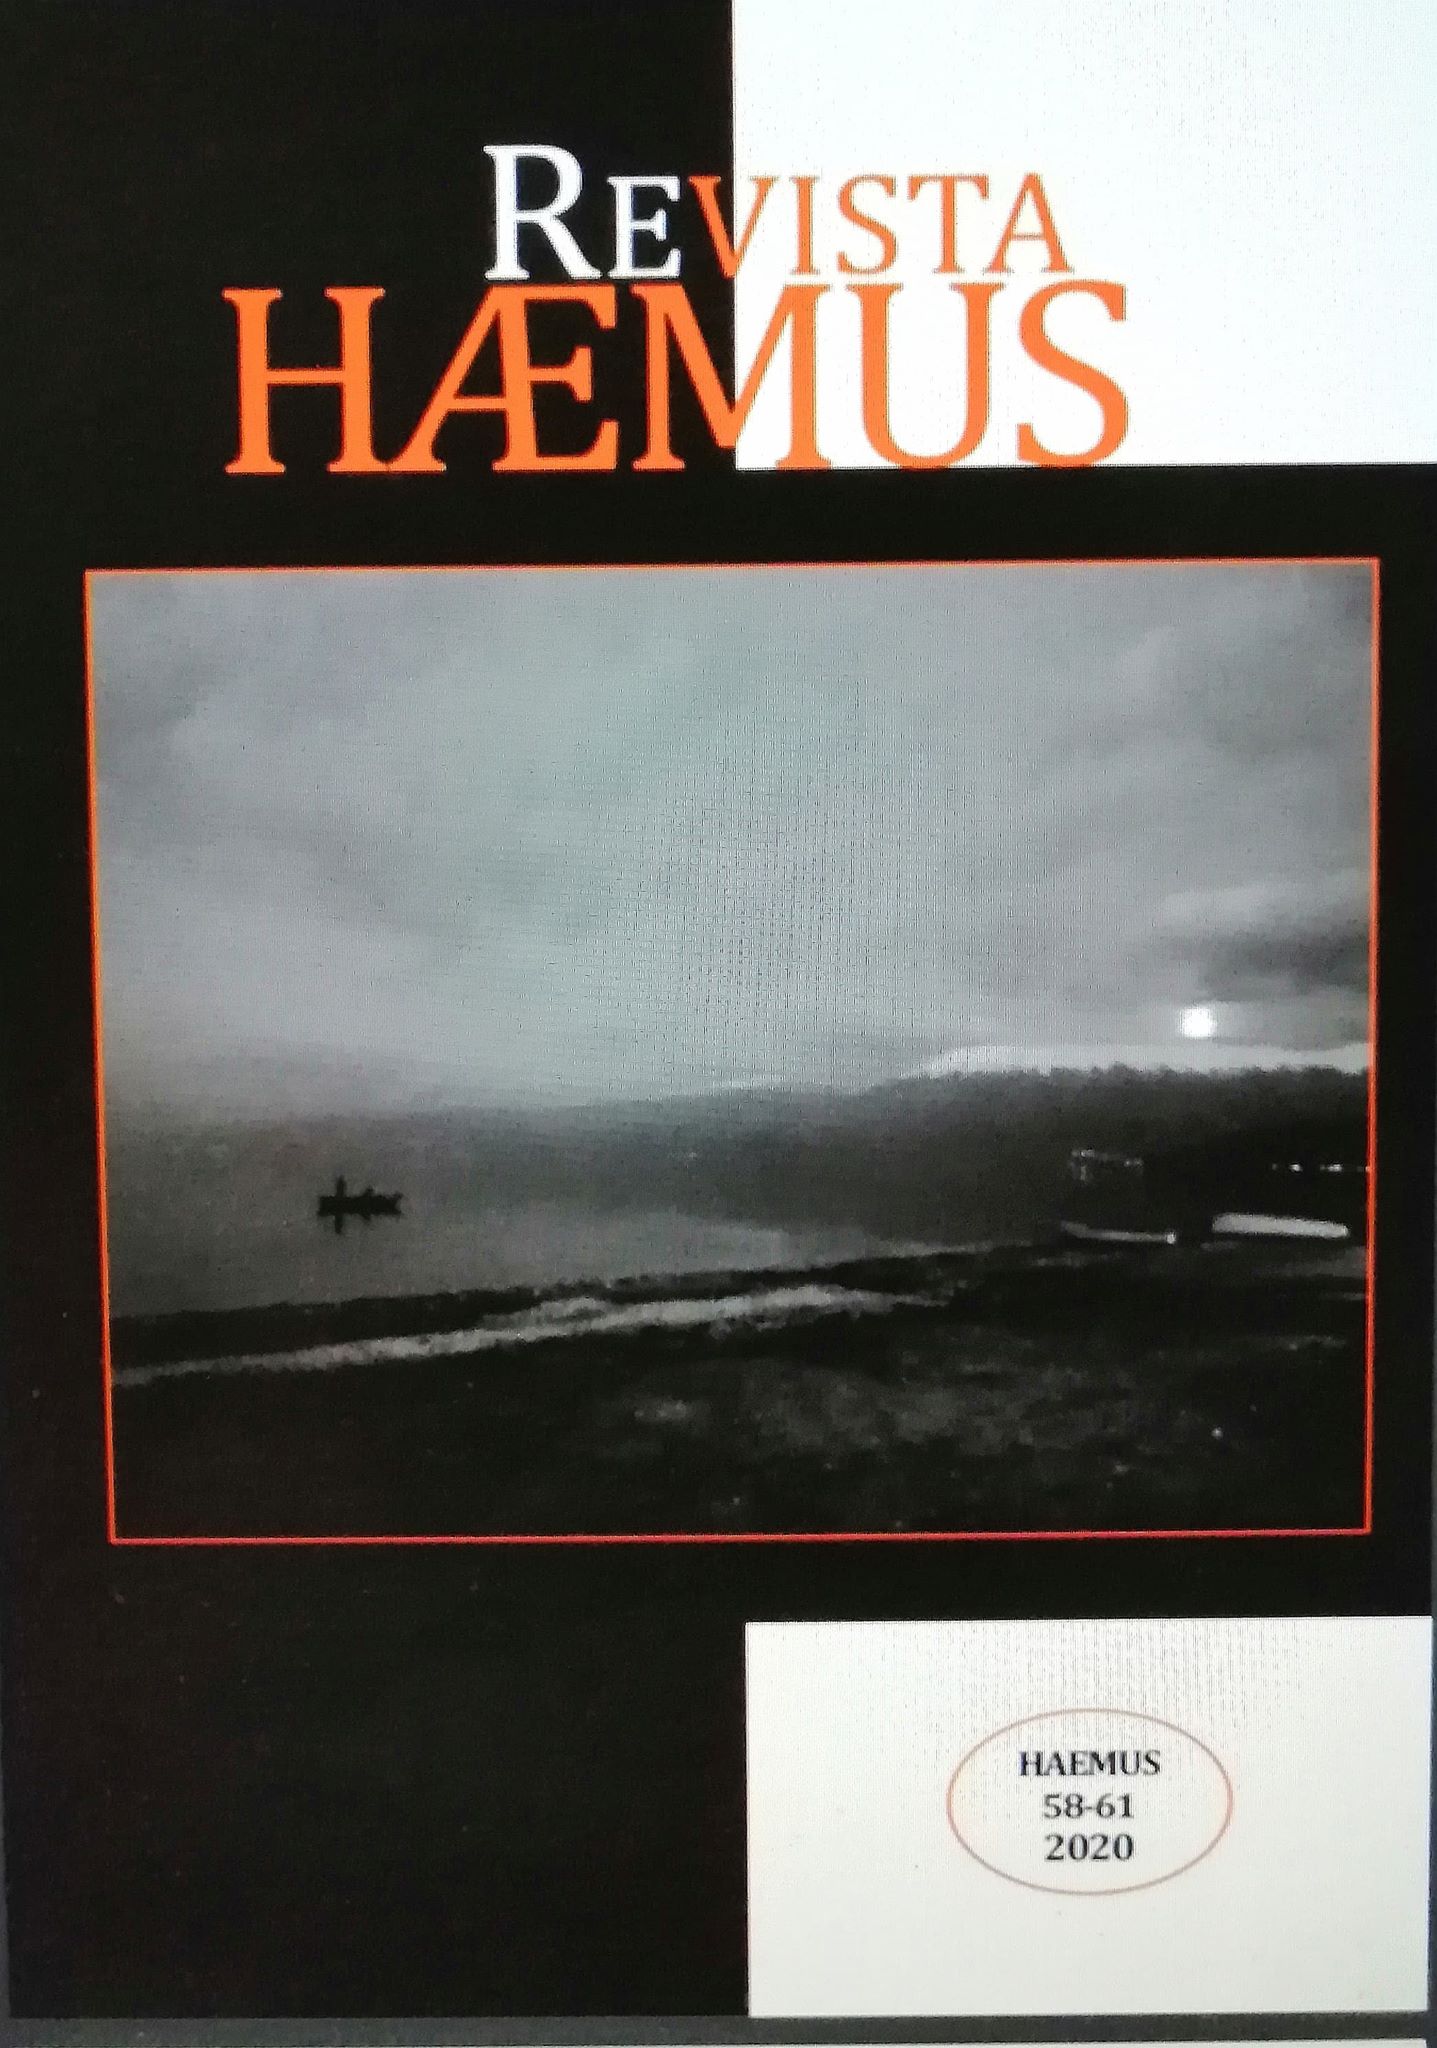 Revista Haemus - 58-61 - 2020